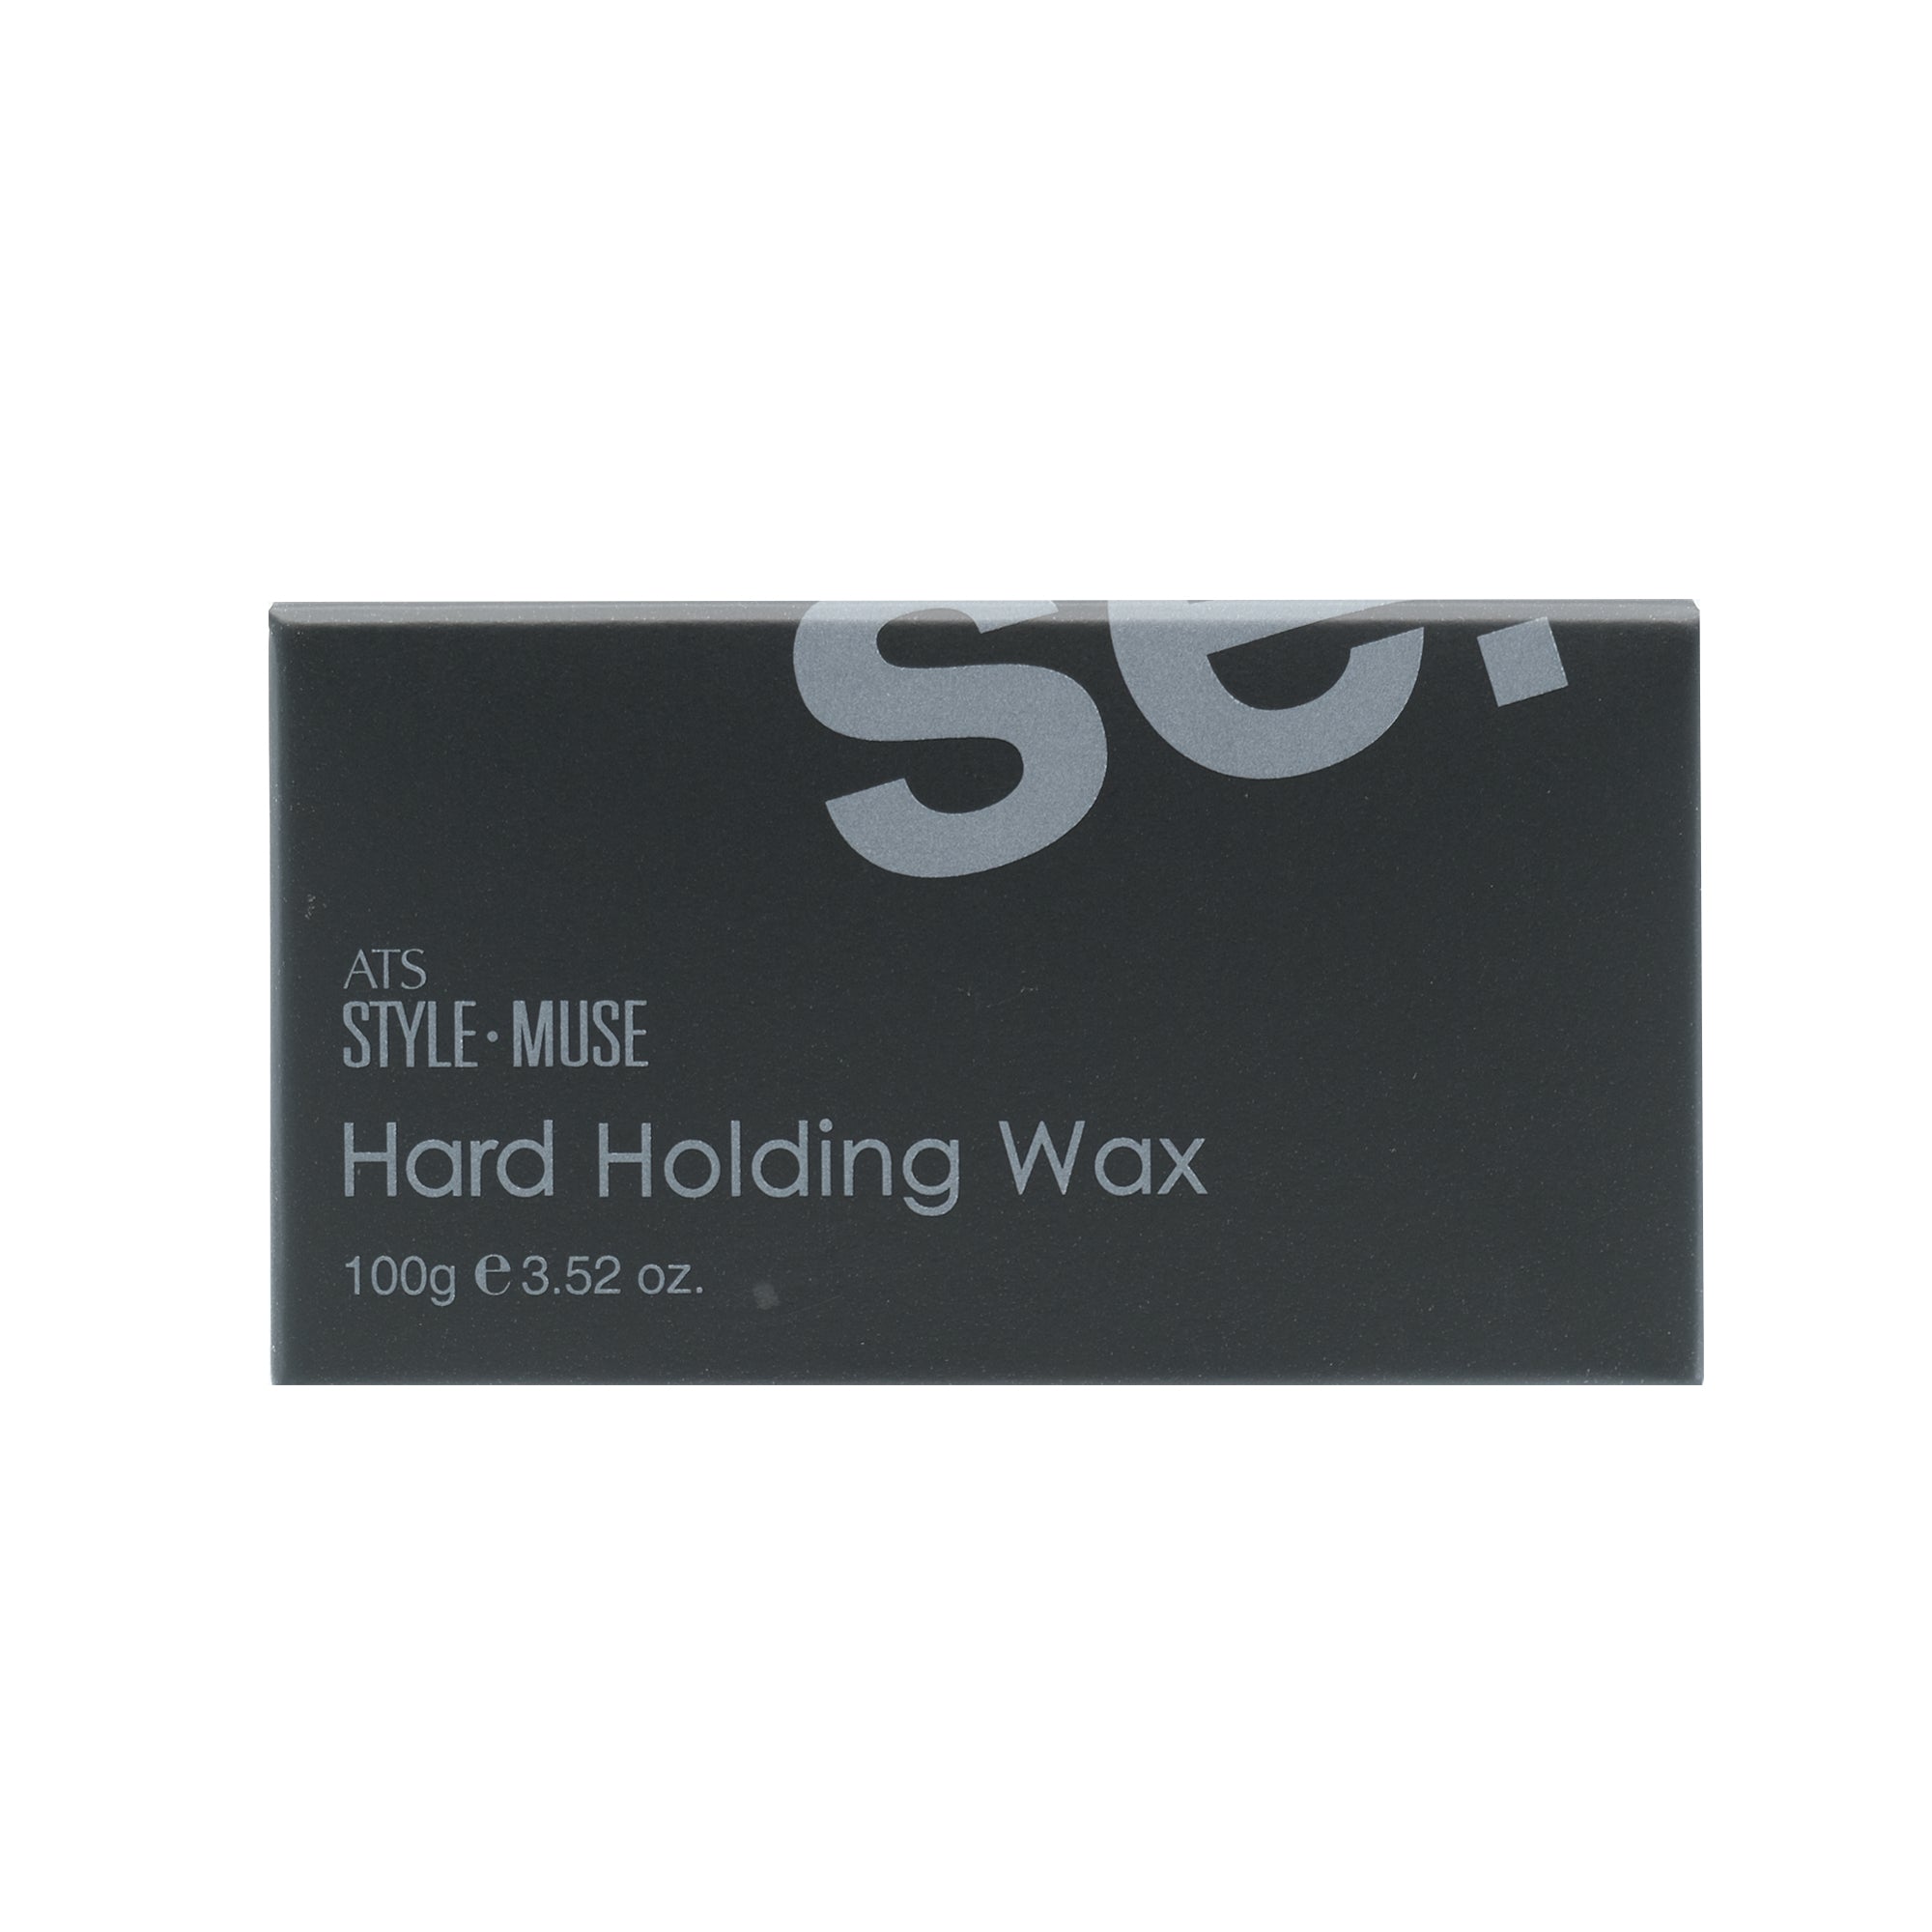 ATS Stylemuse Hard Holding Wax